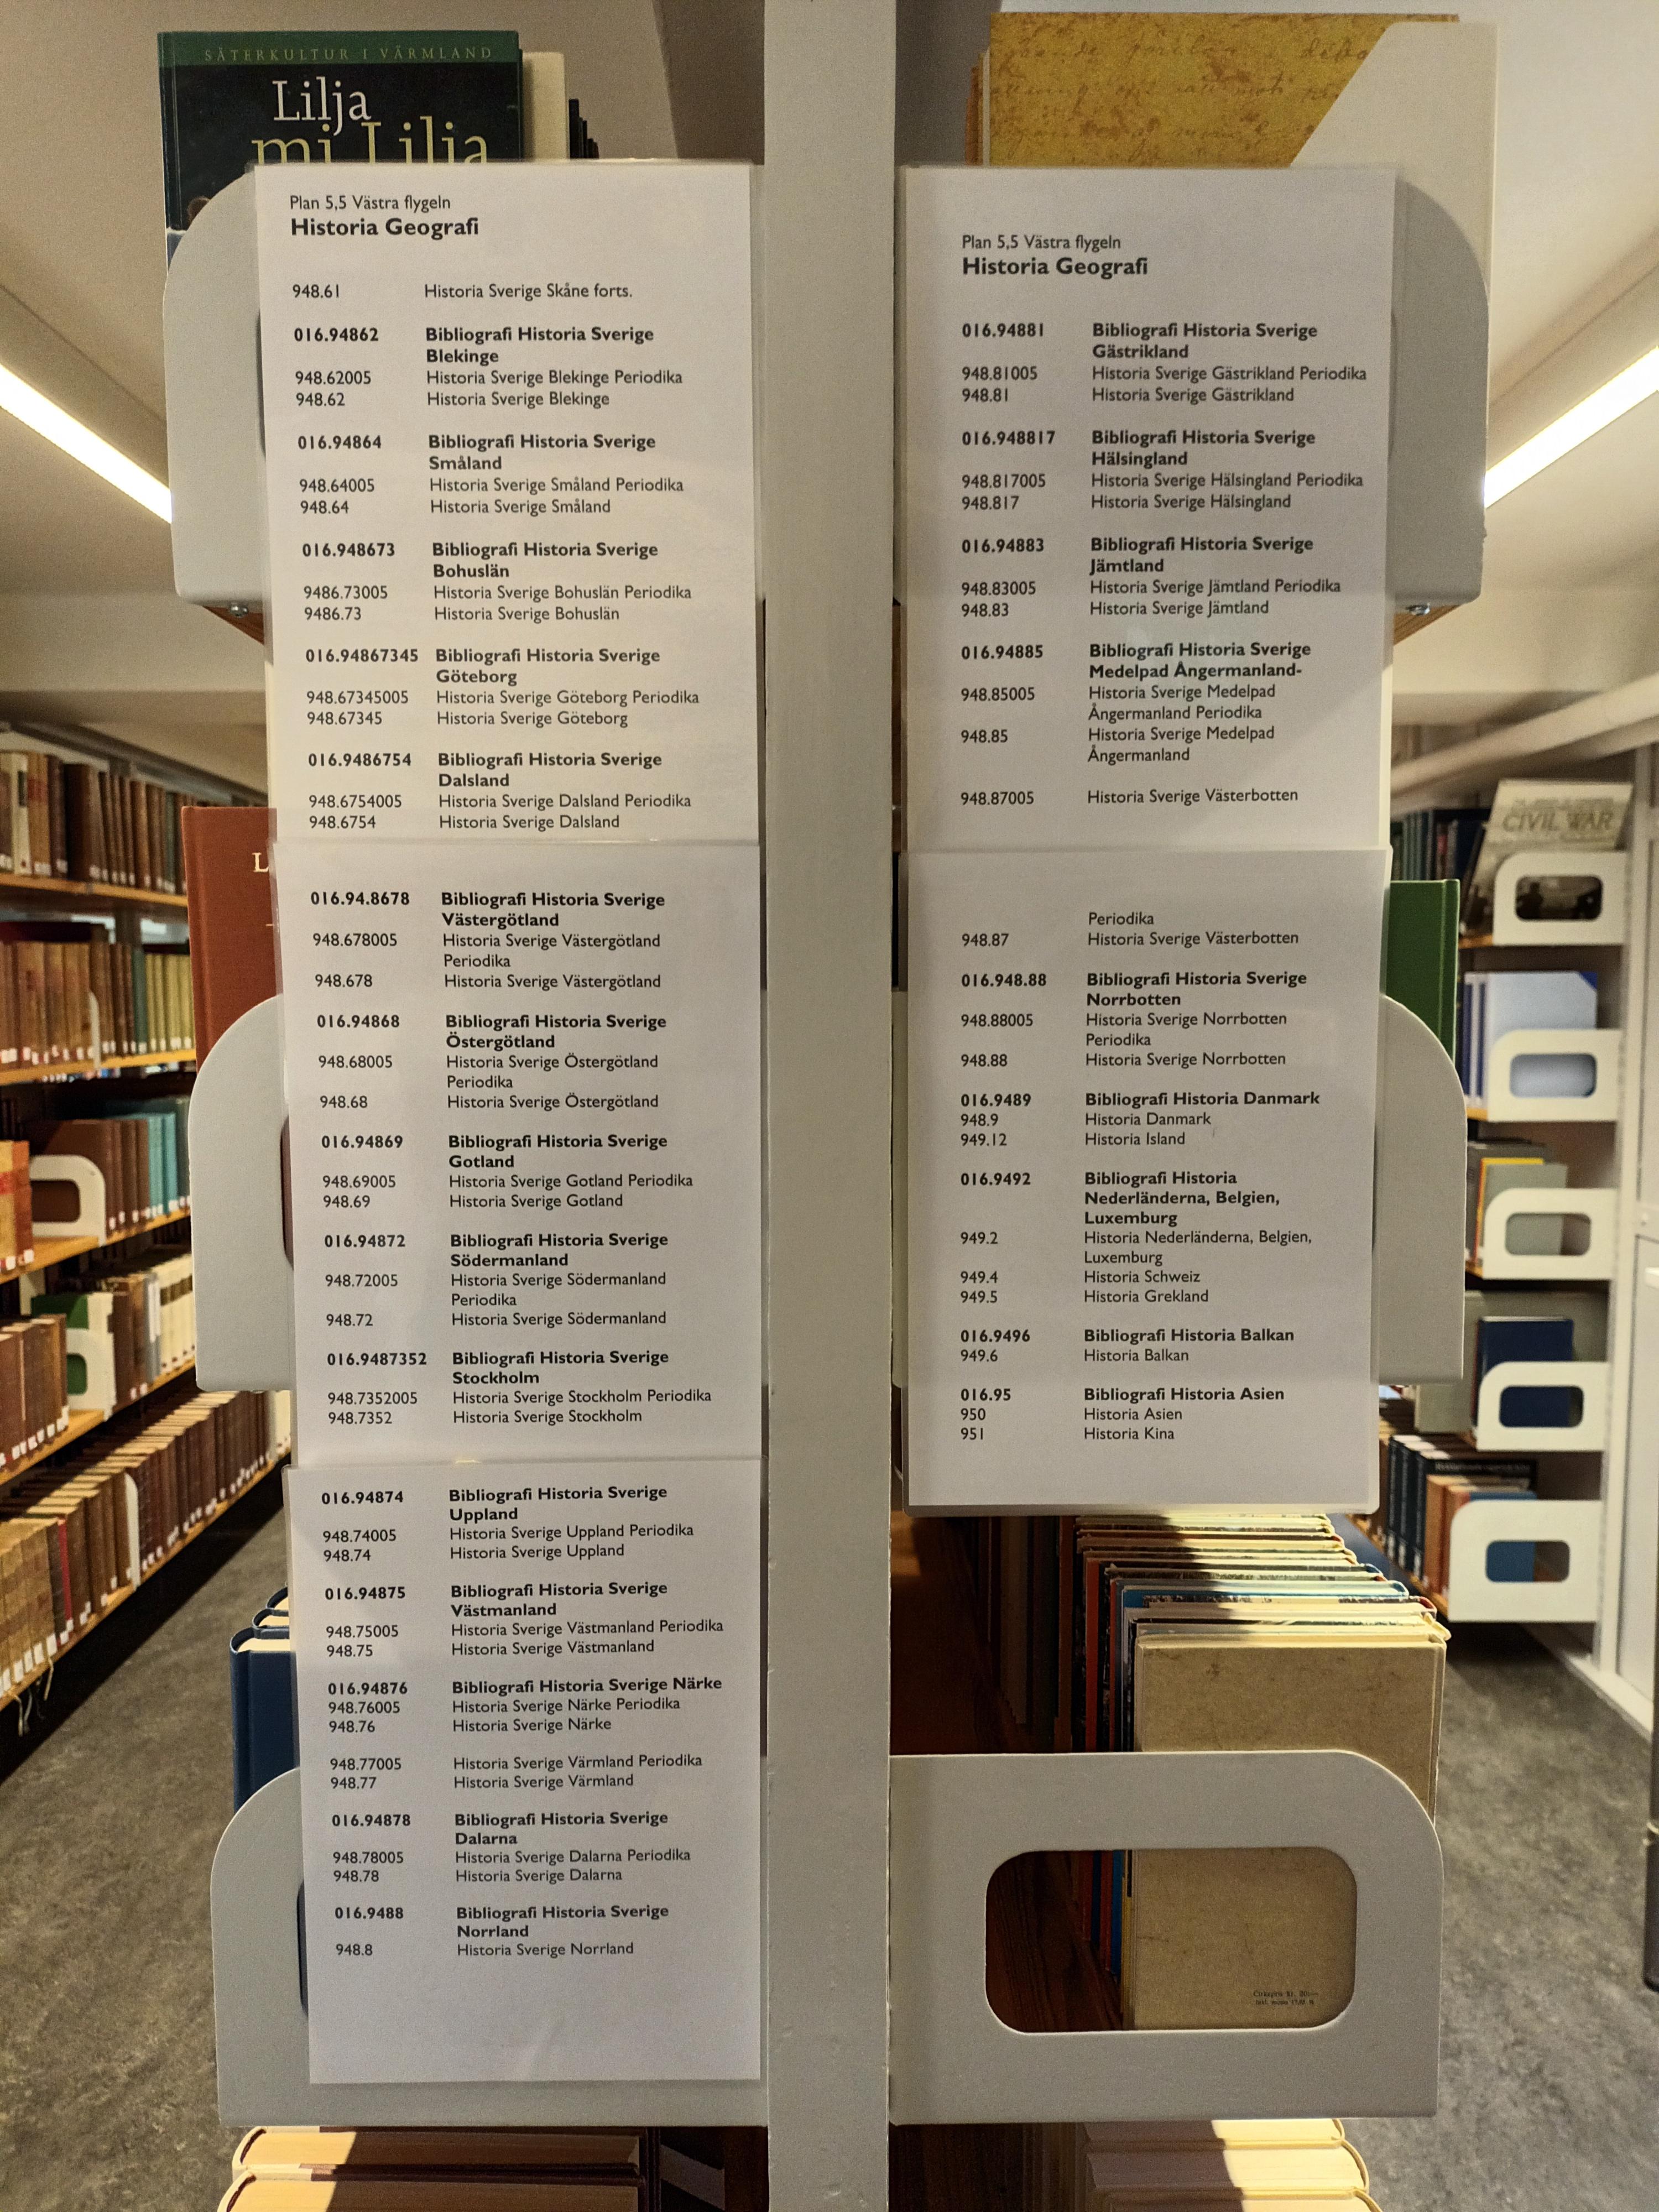 Hyllgavel i KB:s referensbibliotek. Informationsskyltar om uppställning av referensböcker i historia och geografi enligt Dewey decimalklassifikation.